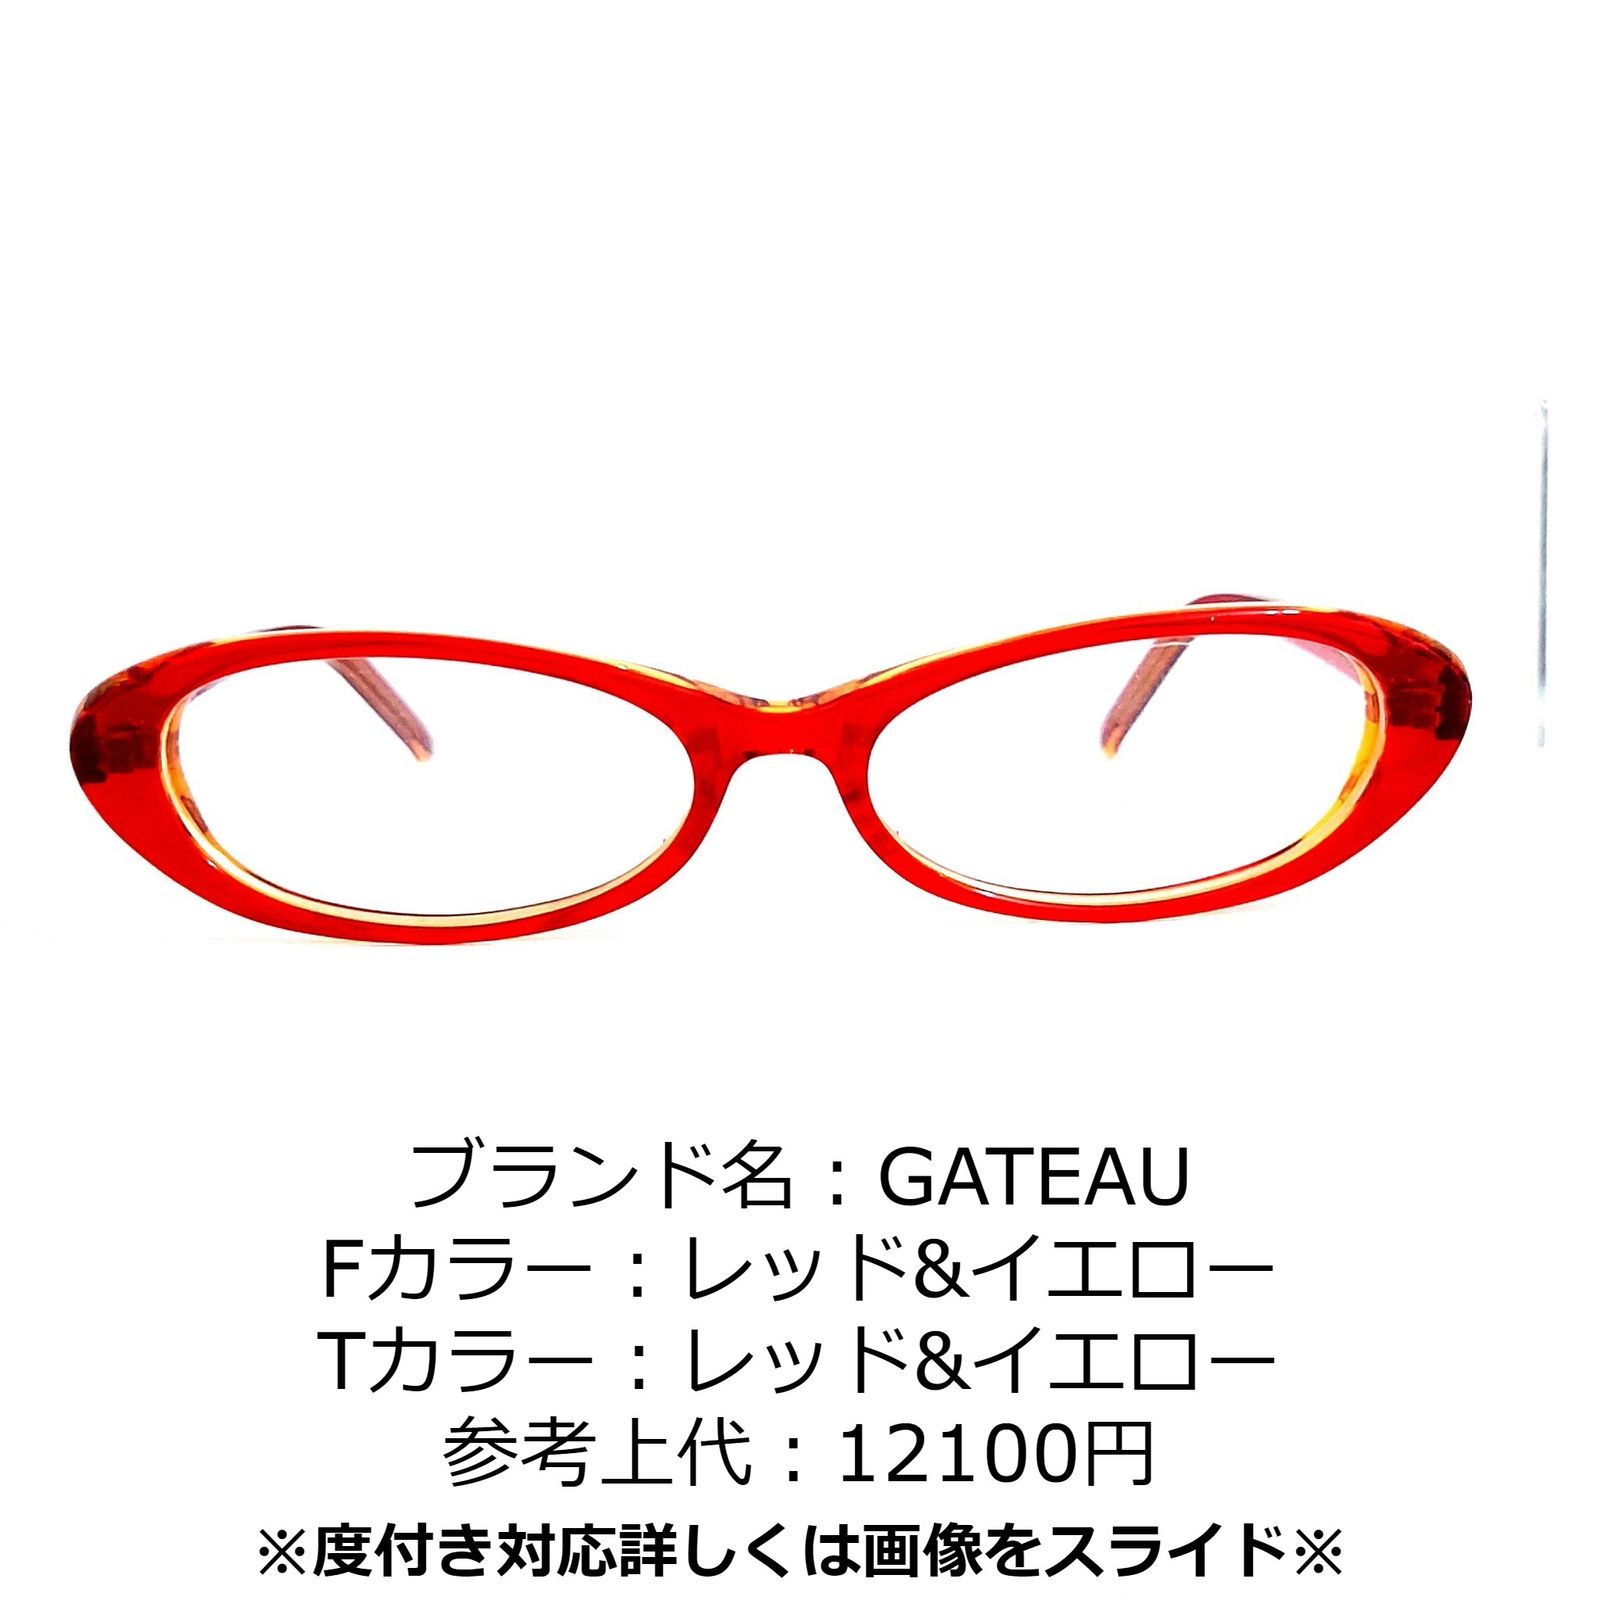 No.1247-メガネ GATEAU【フレームのみ価格】 - スッキリ生活専門店